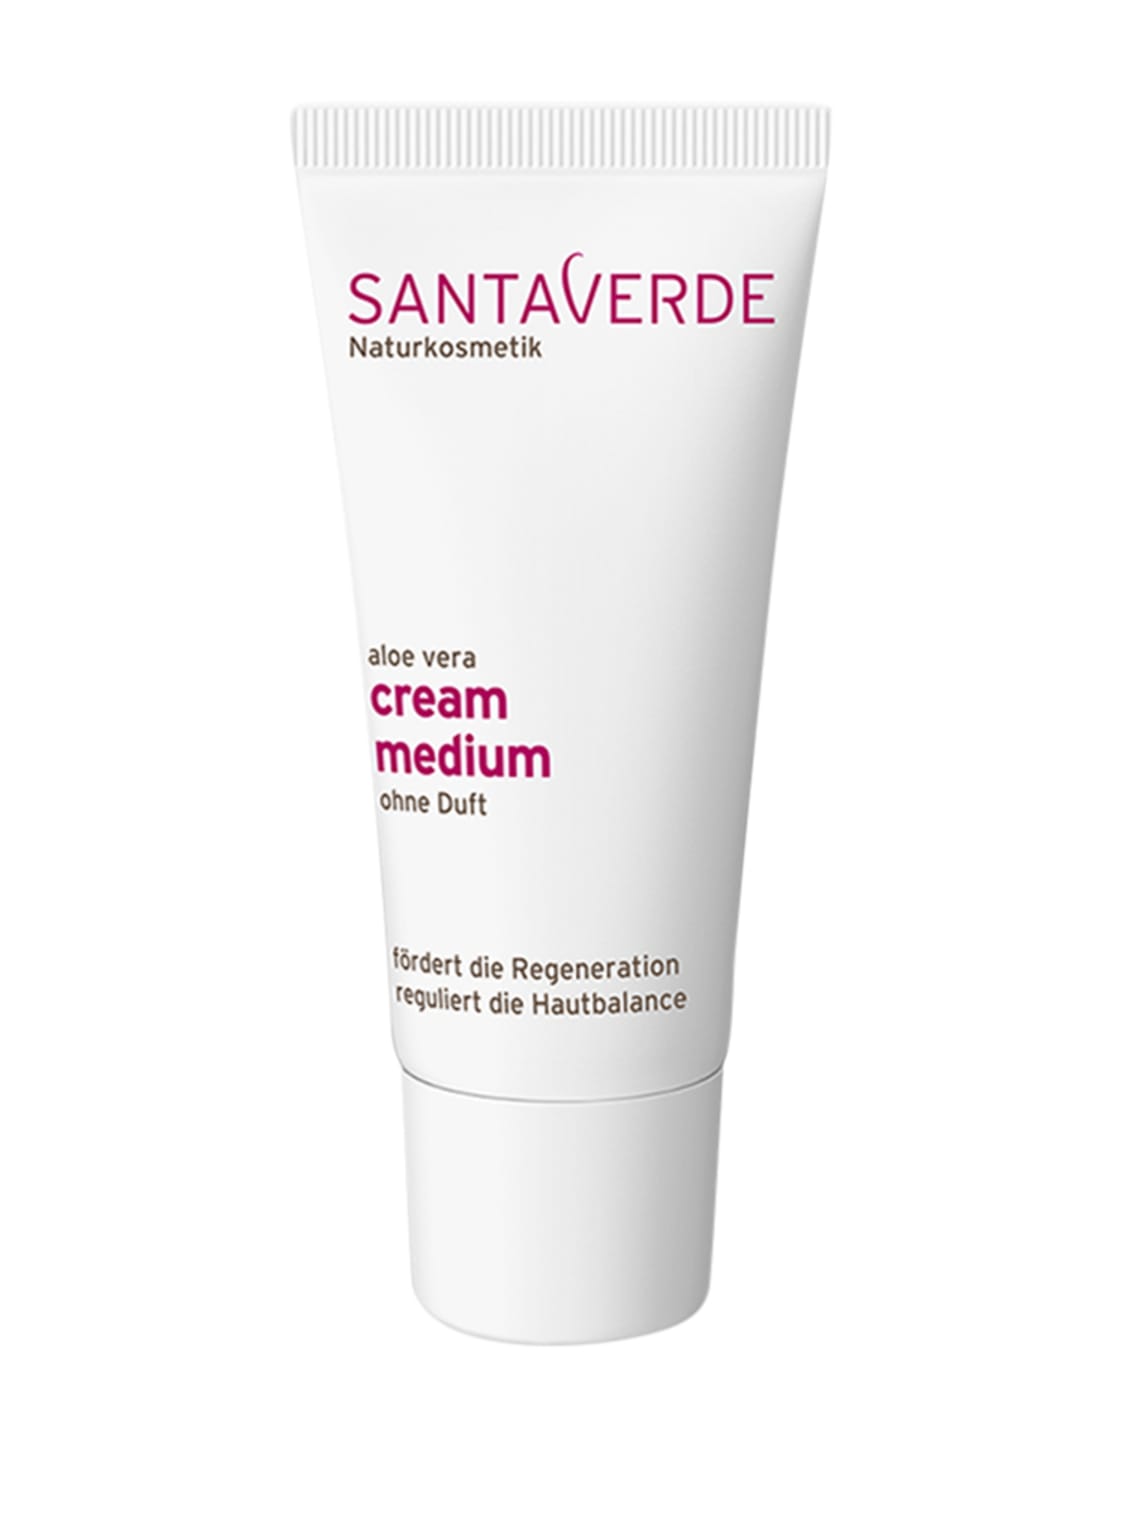 Image of Santaverde Cream Medium Gesichtscreme ohne Duft 30 ml